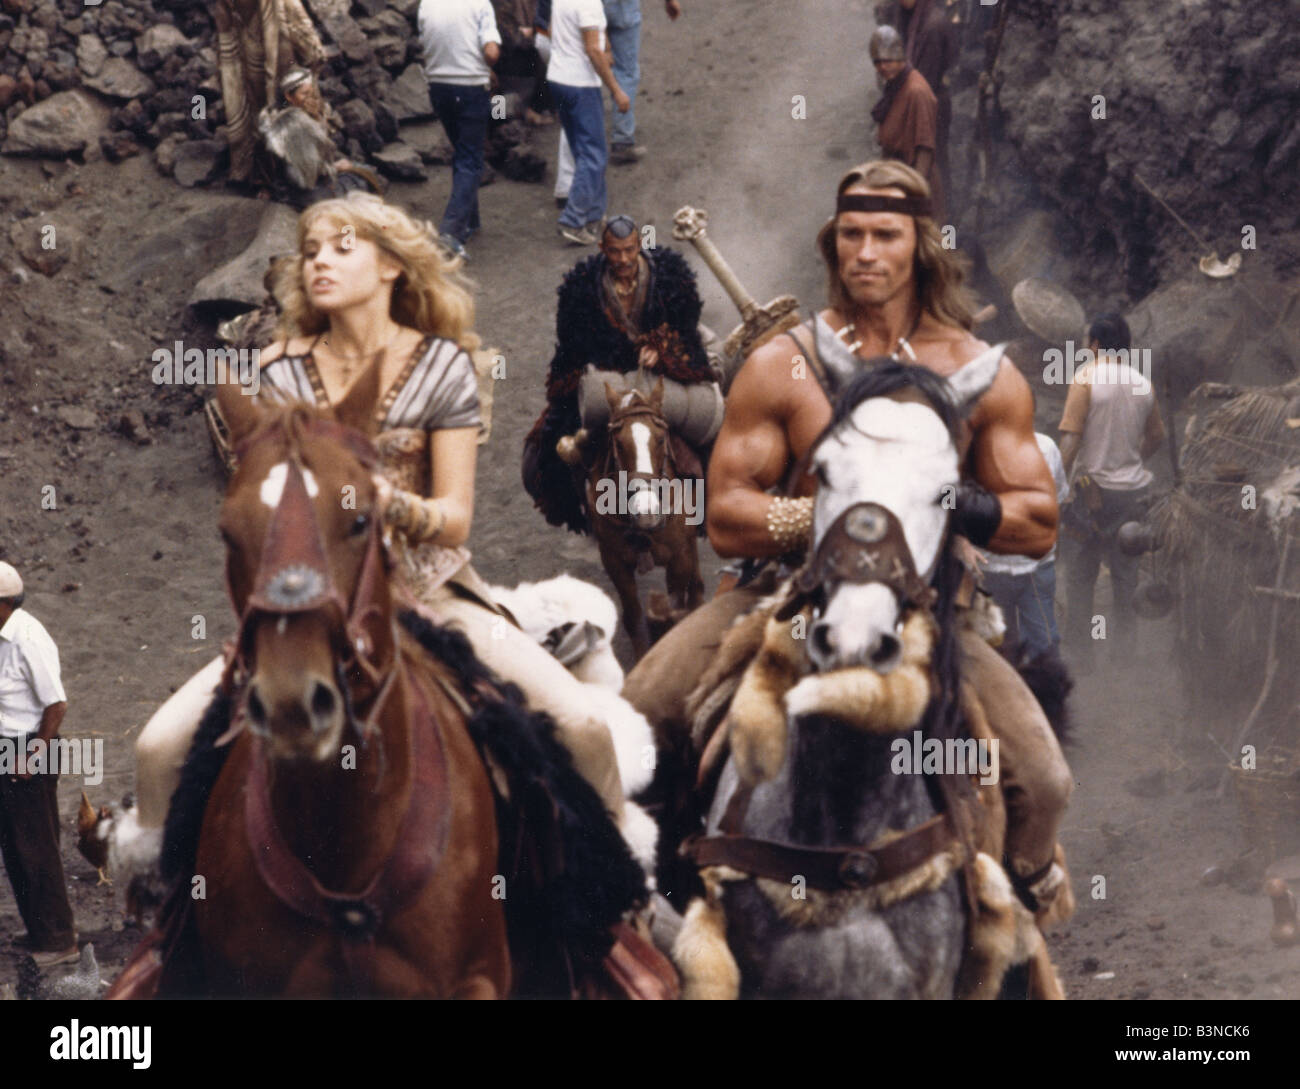 CONAN LE DESTRUCTEUR 1984 Dino De Laurentis film avec Arnold Schwarzenegger et Sarah Douglas Banque D'Images